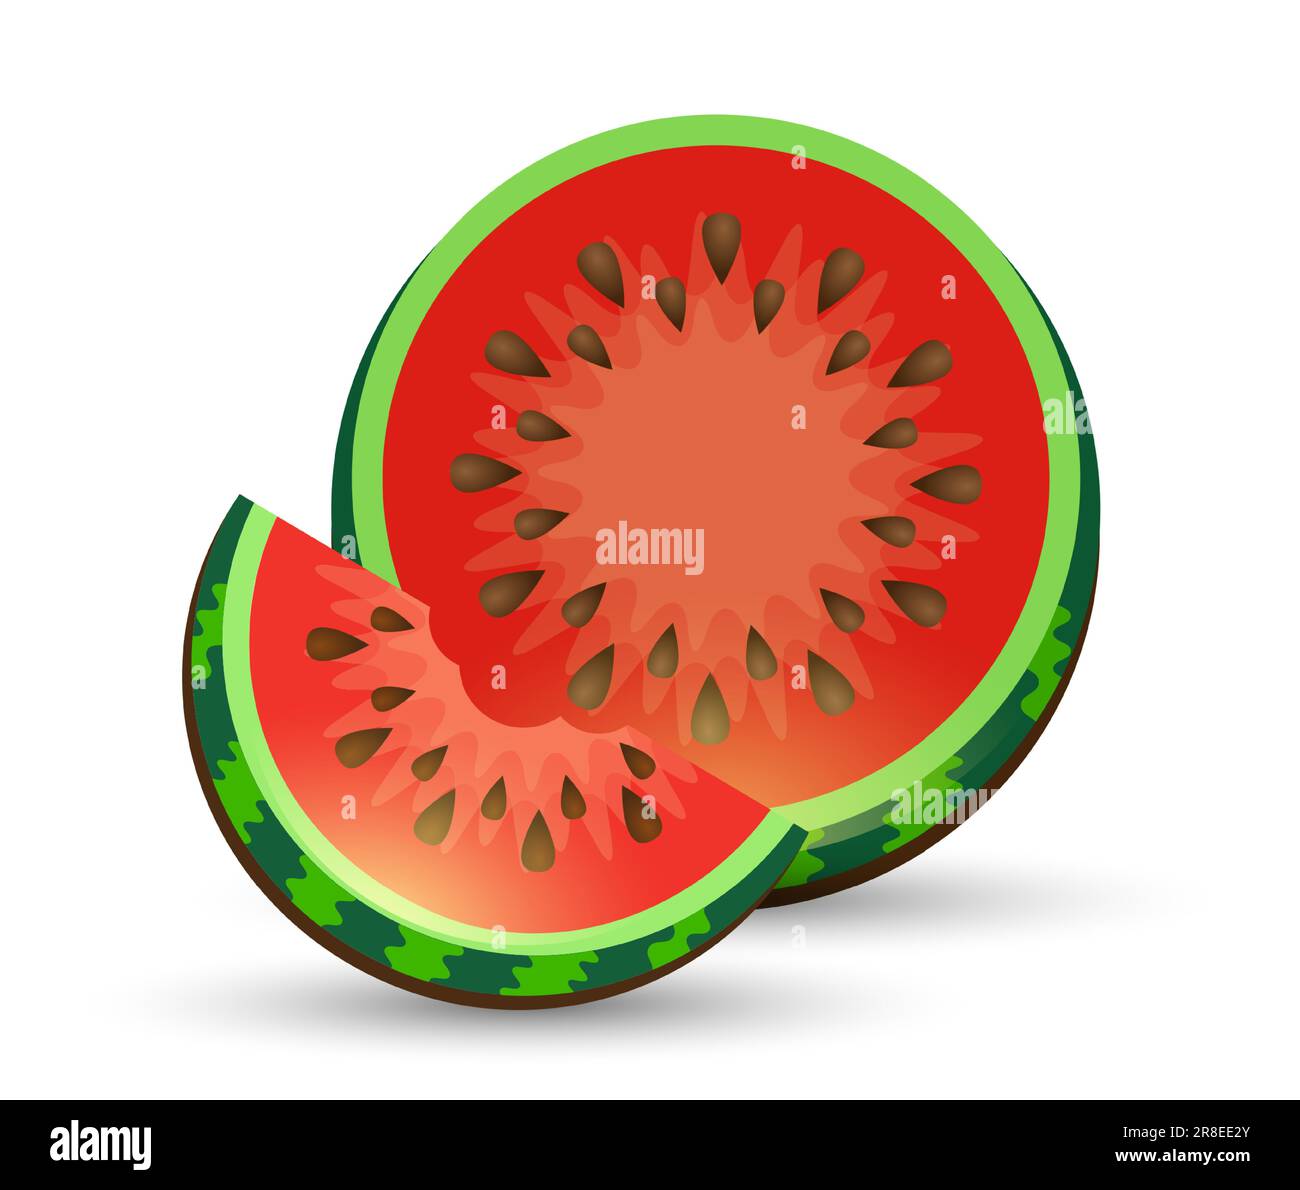 Wassermelone und saftige Wassermelonen-Schichtvektordarstellung im flachen Design, isoliert auf Weiß. Vektorlogo für das Wasser aus ganzen reifen roten Früchten Stock Vektor